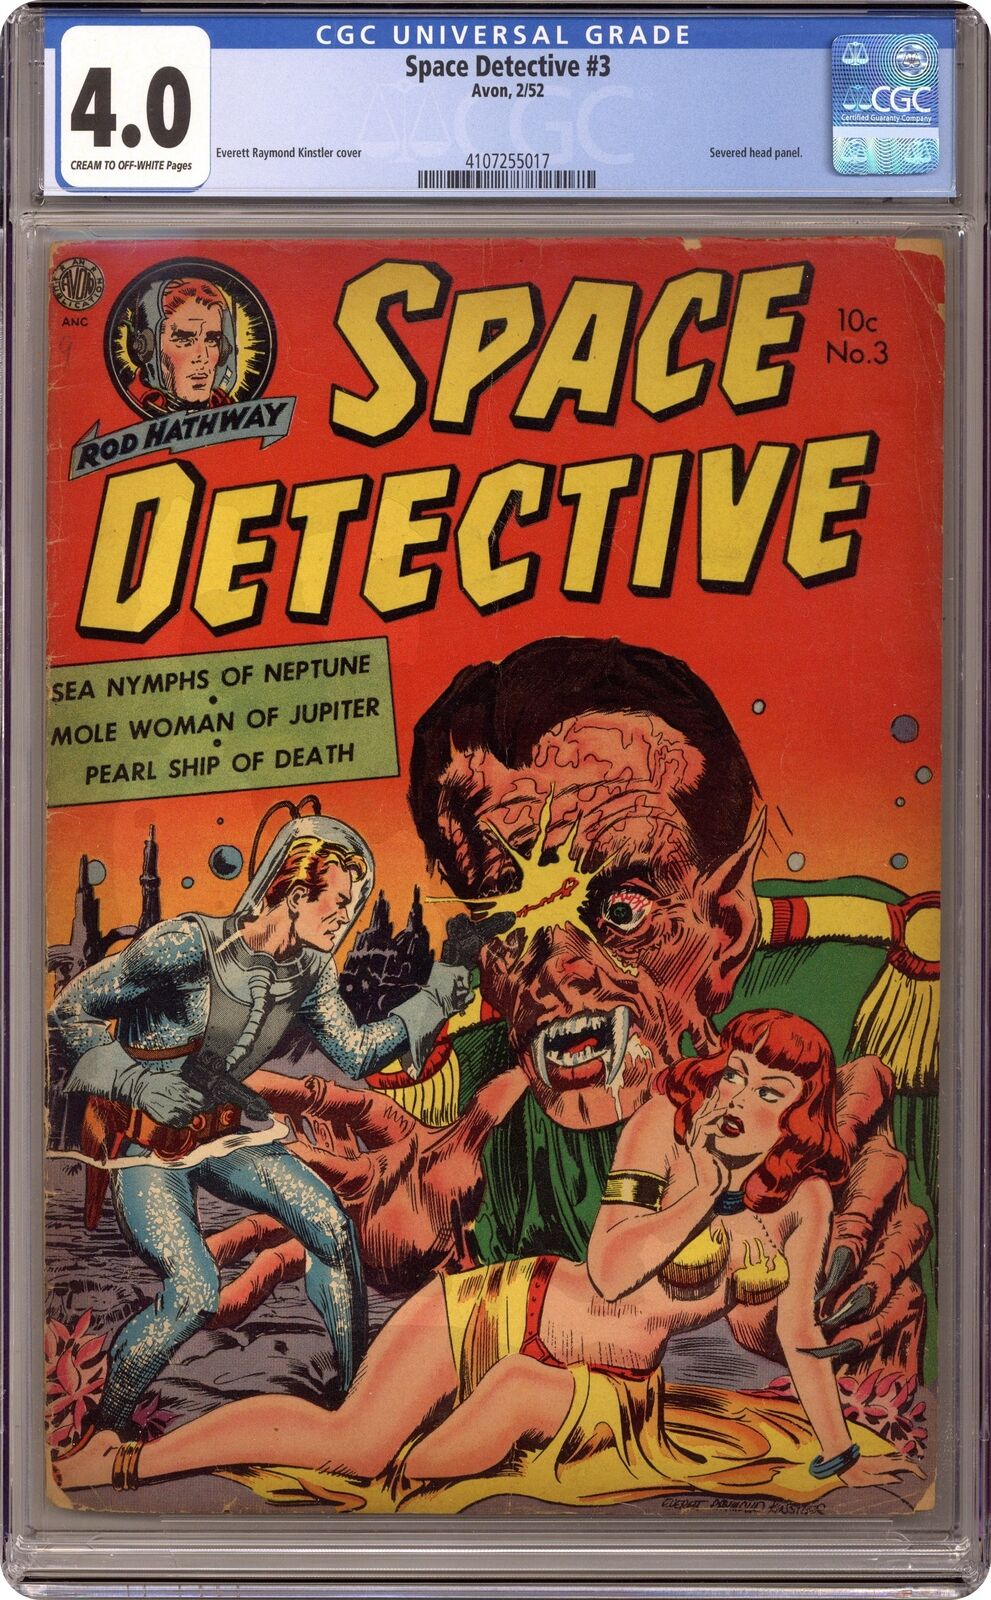 Space Detective #3 CGC 4.0 1952 4107255017